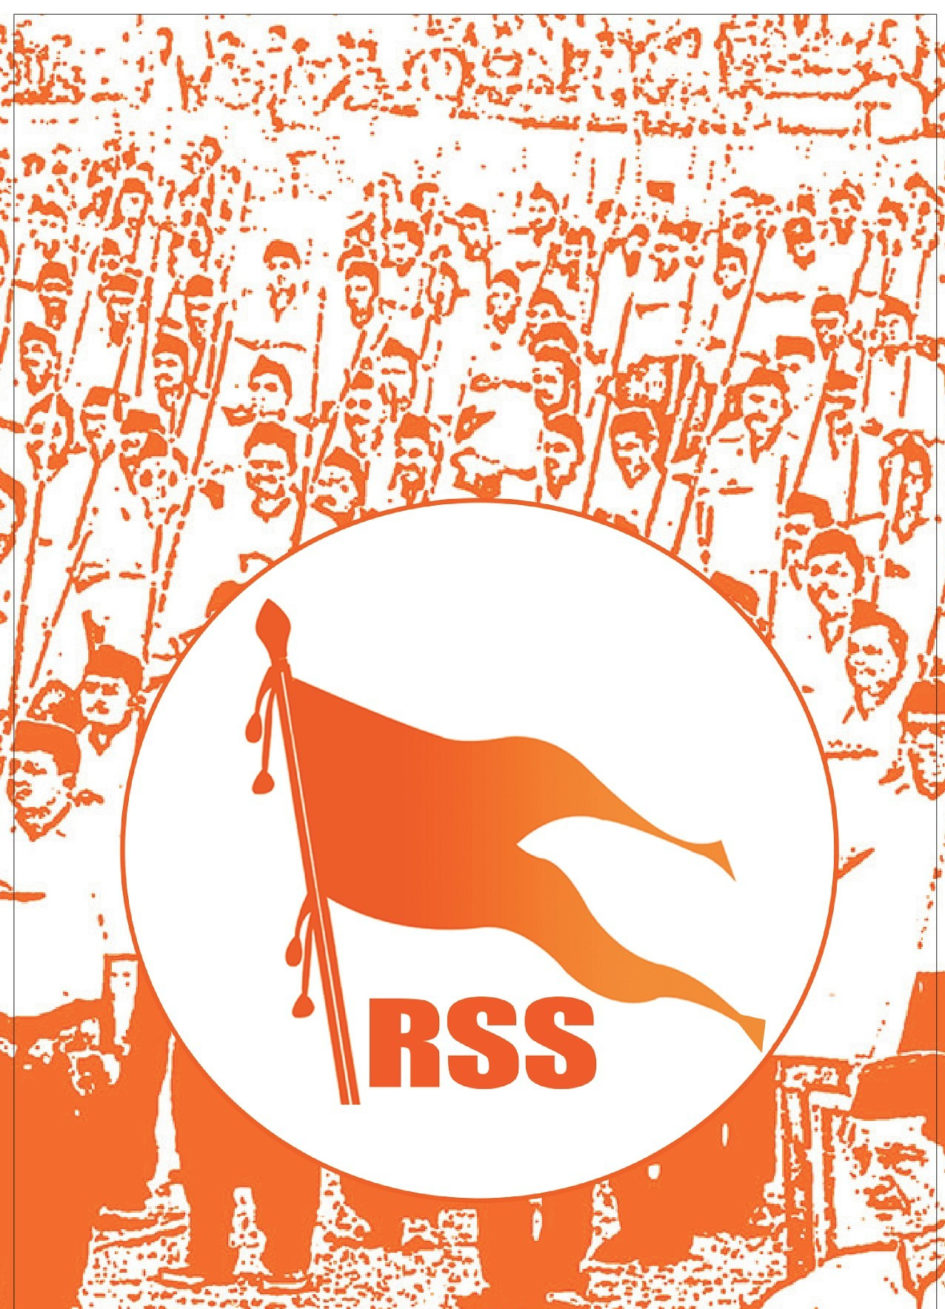 Factsheet: Rashtriya Swayamsewak Sangh (RSS) - Kractivism